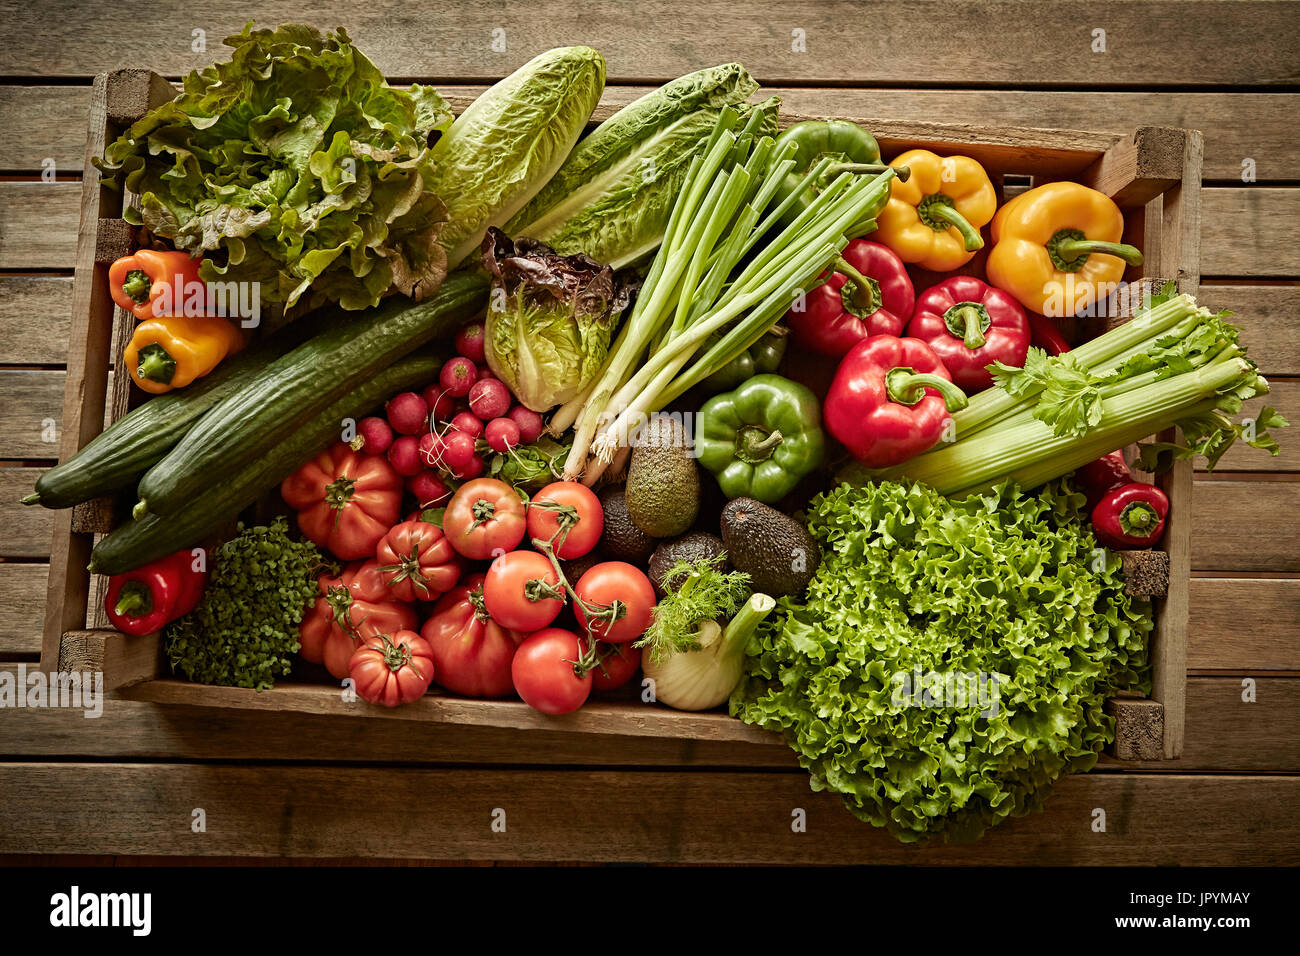 La vie, toujours frais, légumes bio saine récolte variété En caisse bois Banque D'Images